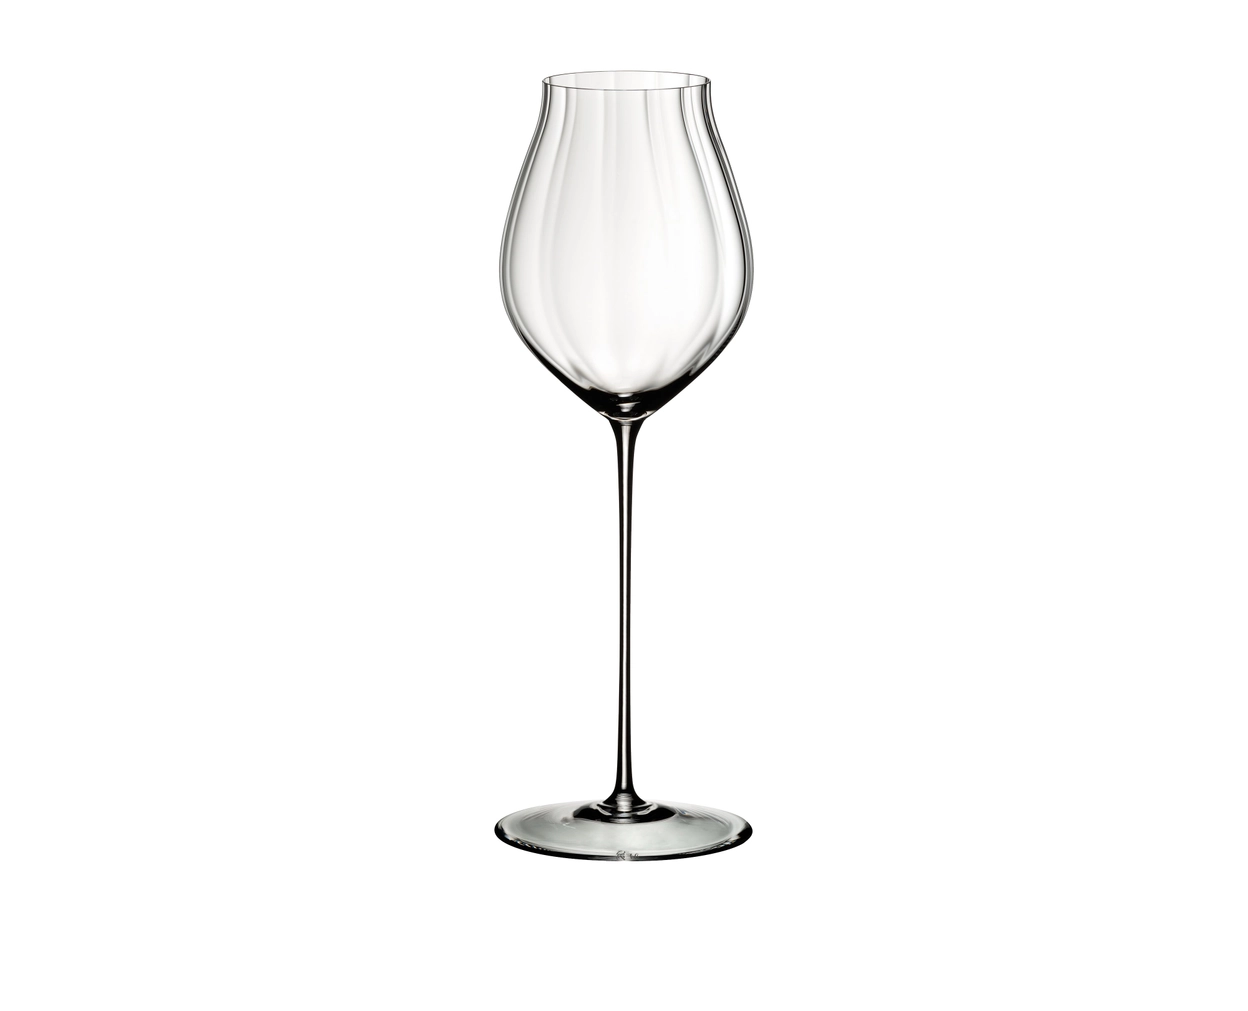 Riedel High Performance Pinot Noir Glas, klarer Stiel, 4er-Set